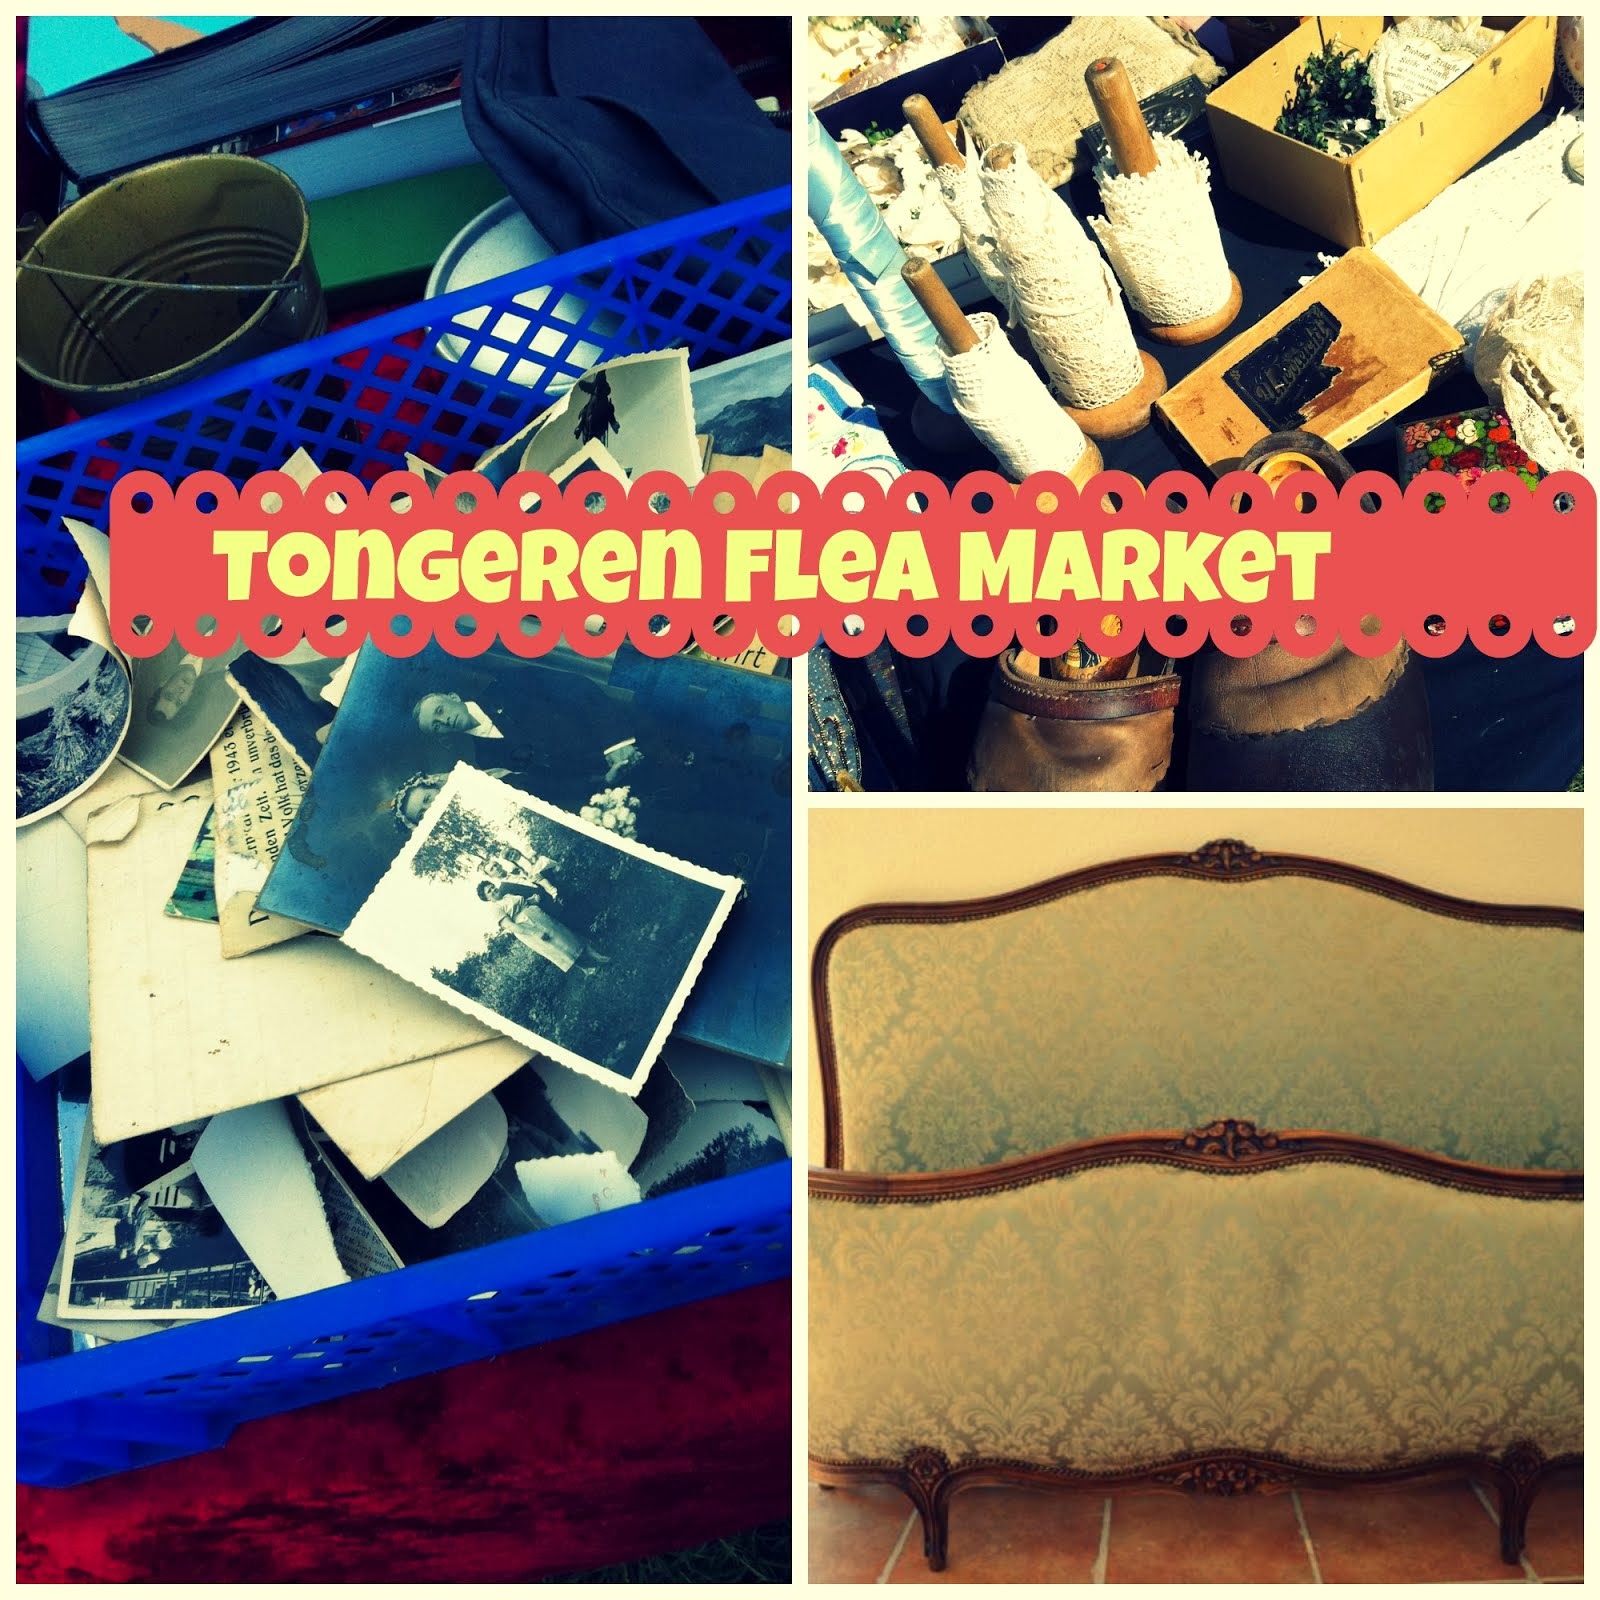 Tongeren Flea Market 2.5 hour drive